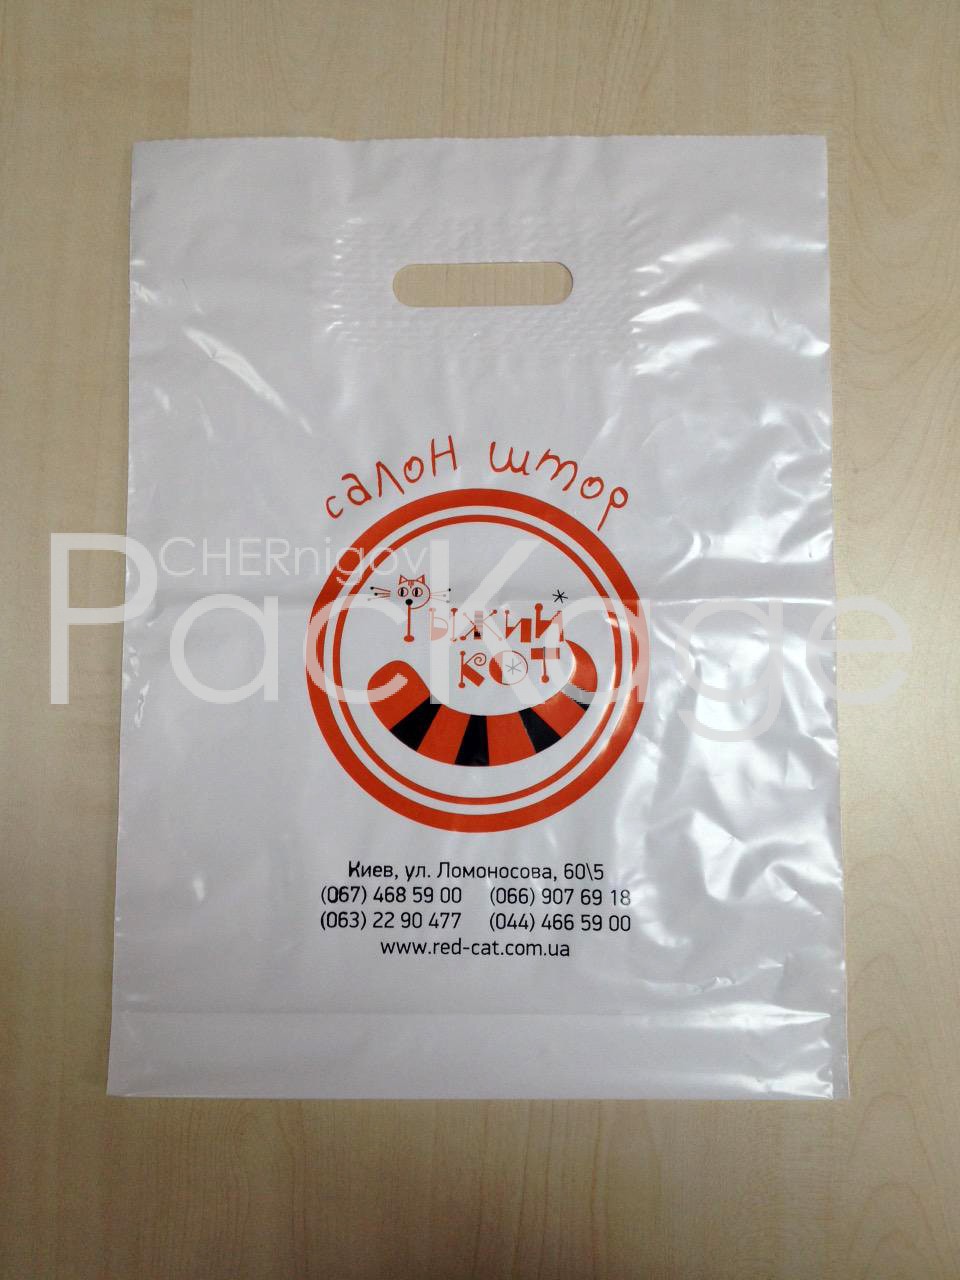 Пакеты для супермаркетов Chernigov Package - Фото LY-05022015-25